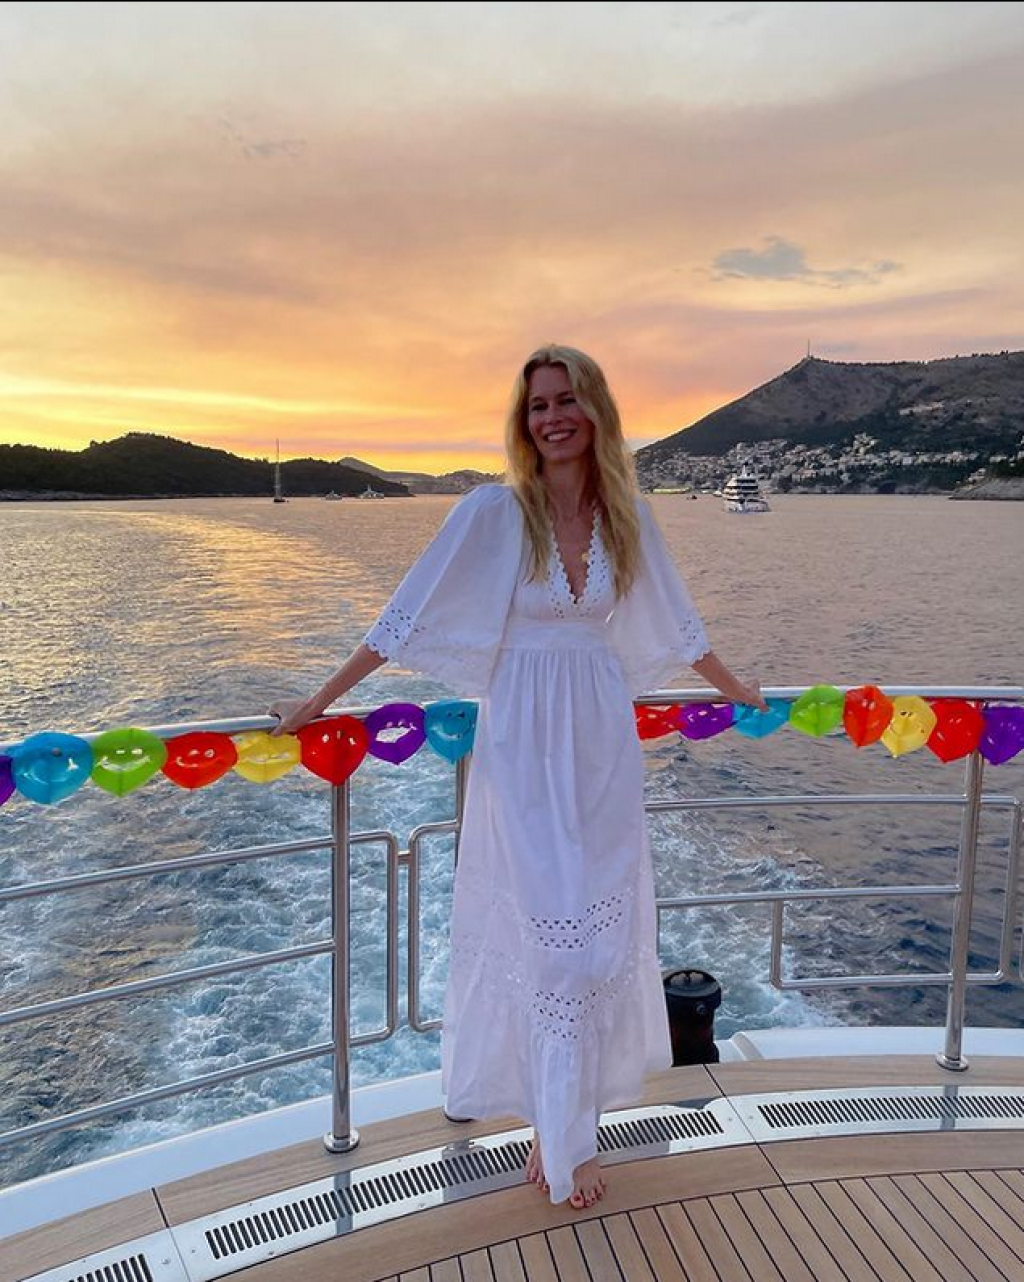 &lt;p&gt;Claudia Schiffer uživa na odmoru u Dubrovniku&lt;/p&gt;